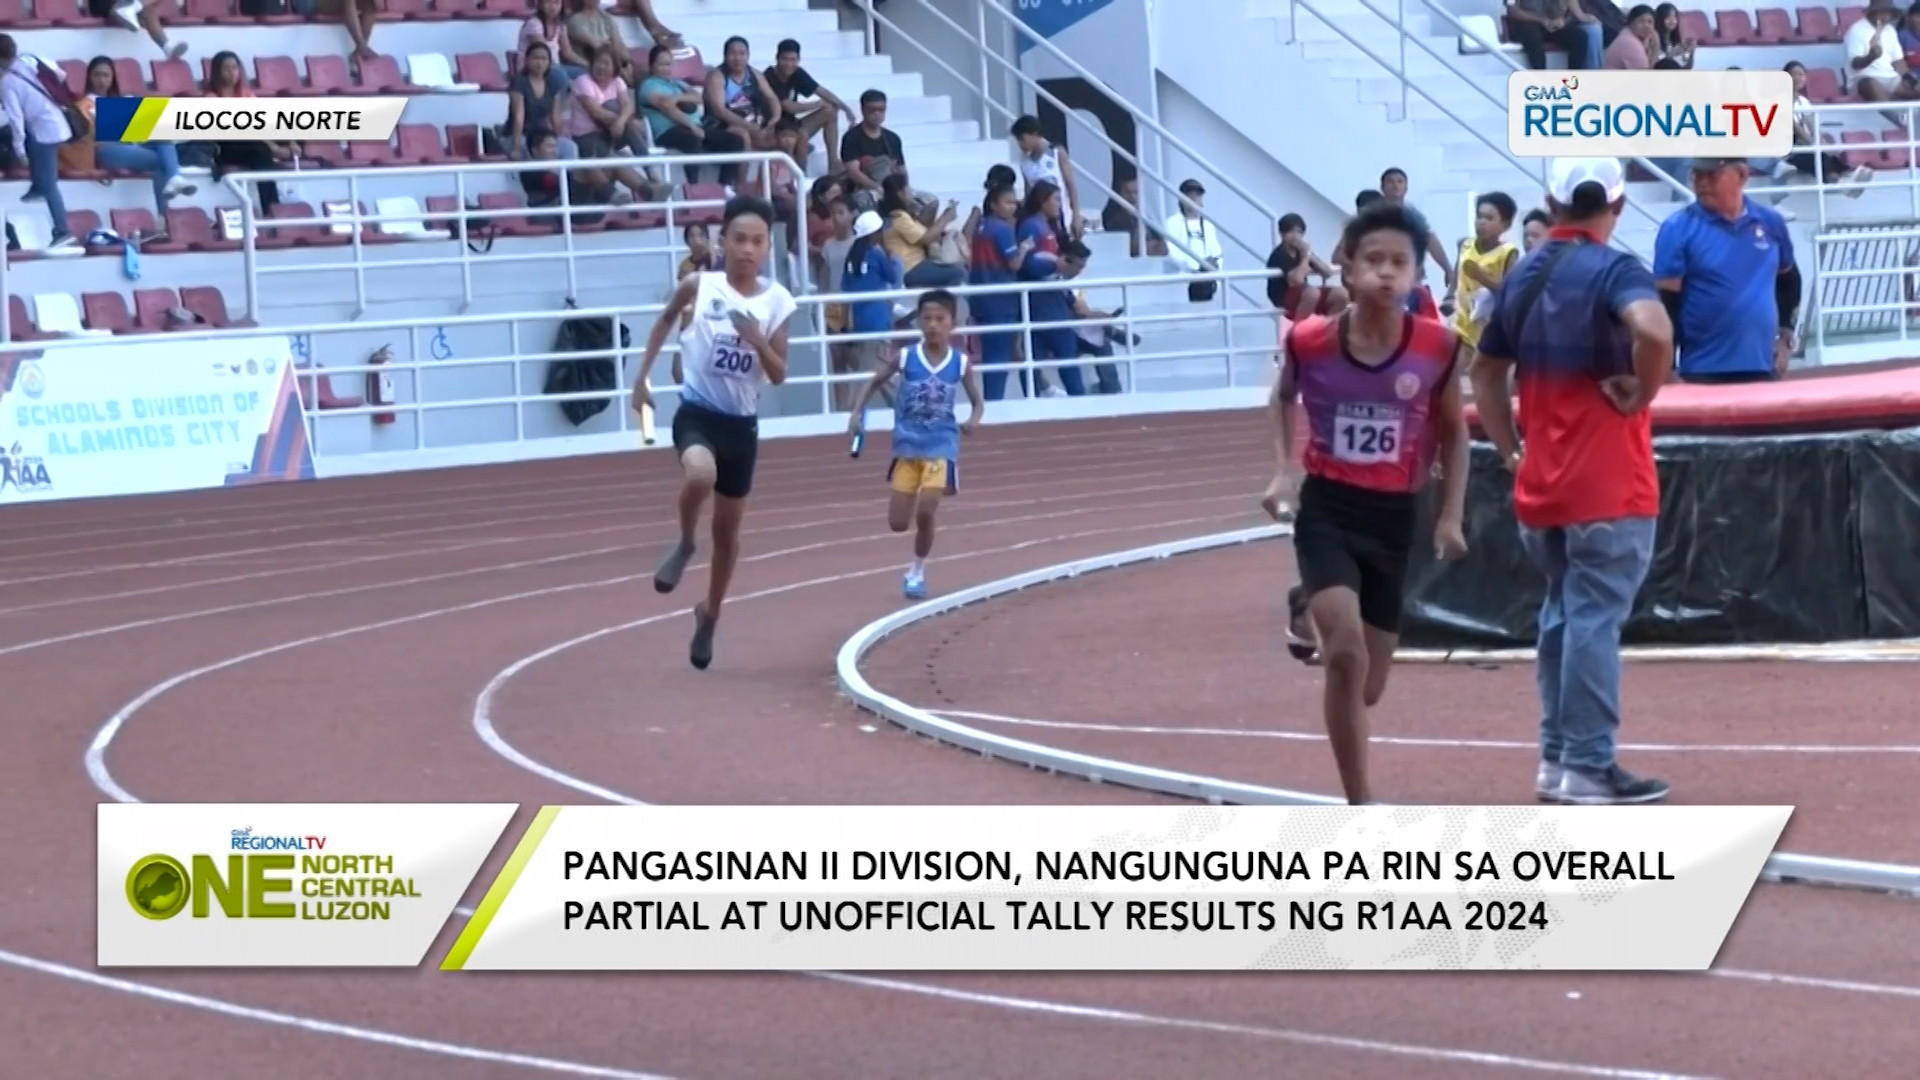 Pang II Division, nangunguna sa partial at unofficial tally results ng R1AA